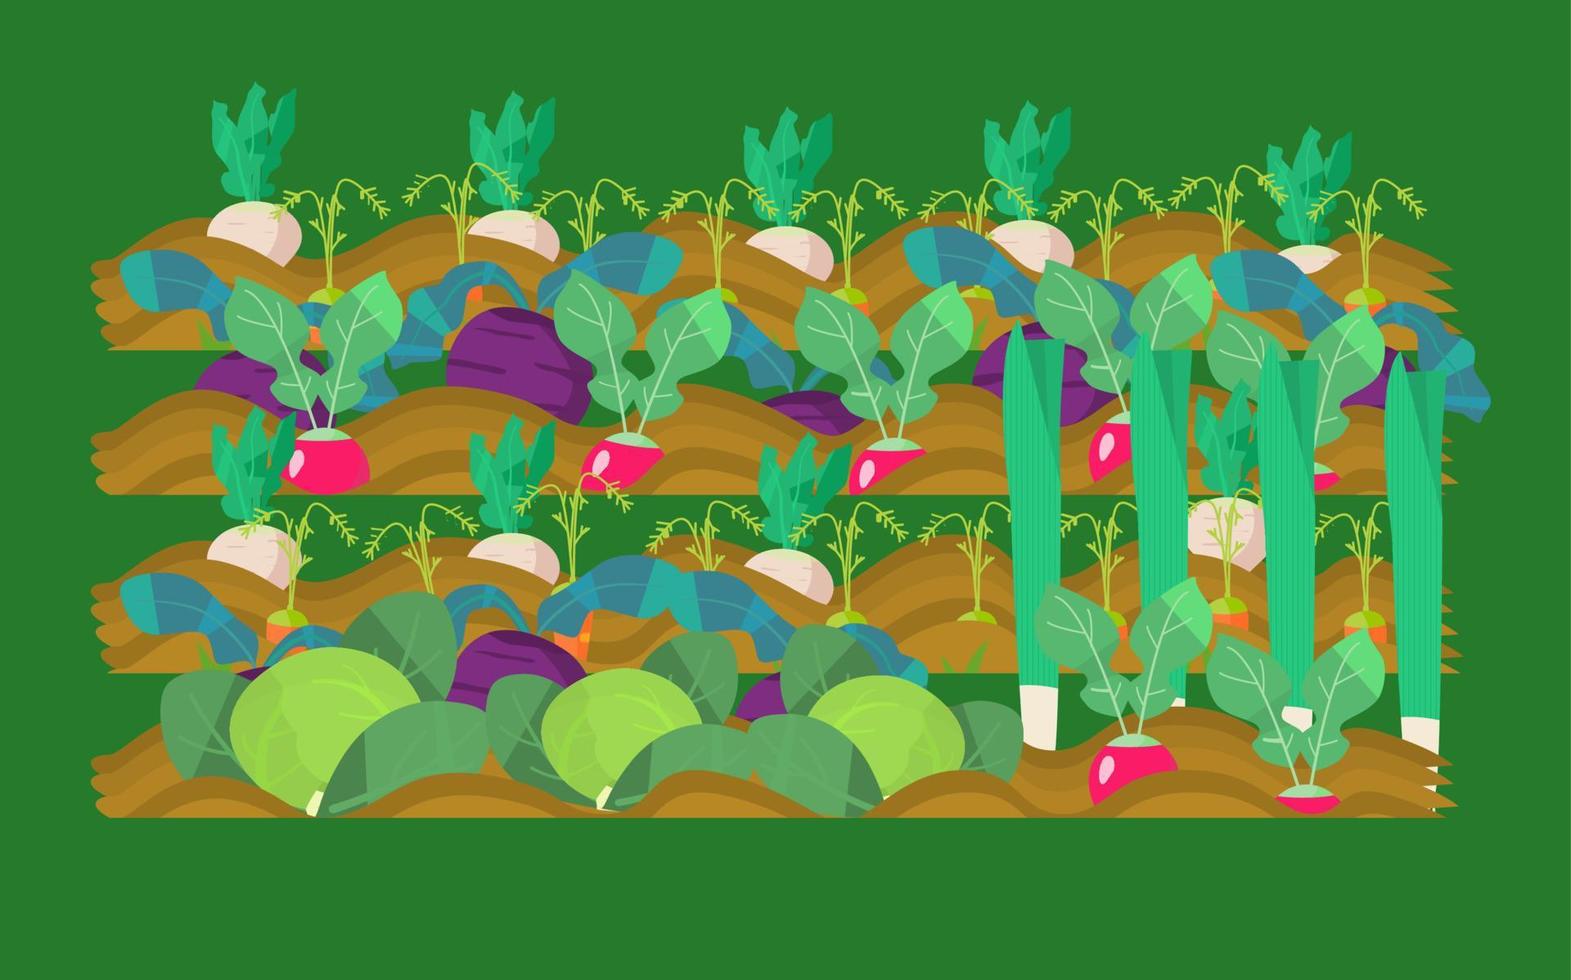 Gemüsegarten-Vektor-Illustration. Rettich, Rüben, Radieschen, Karotten, Kohl, Lauch. vektor